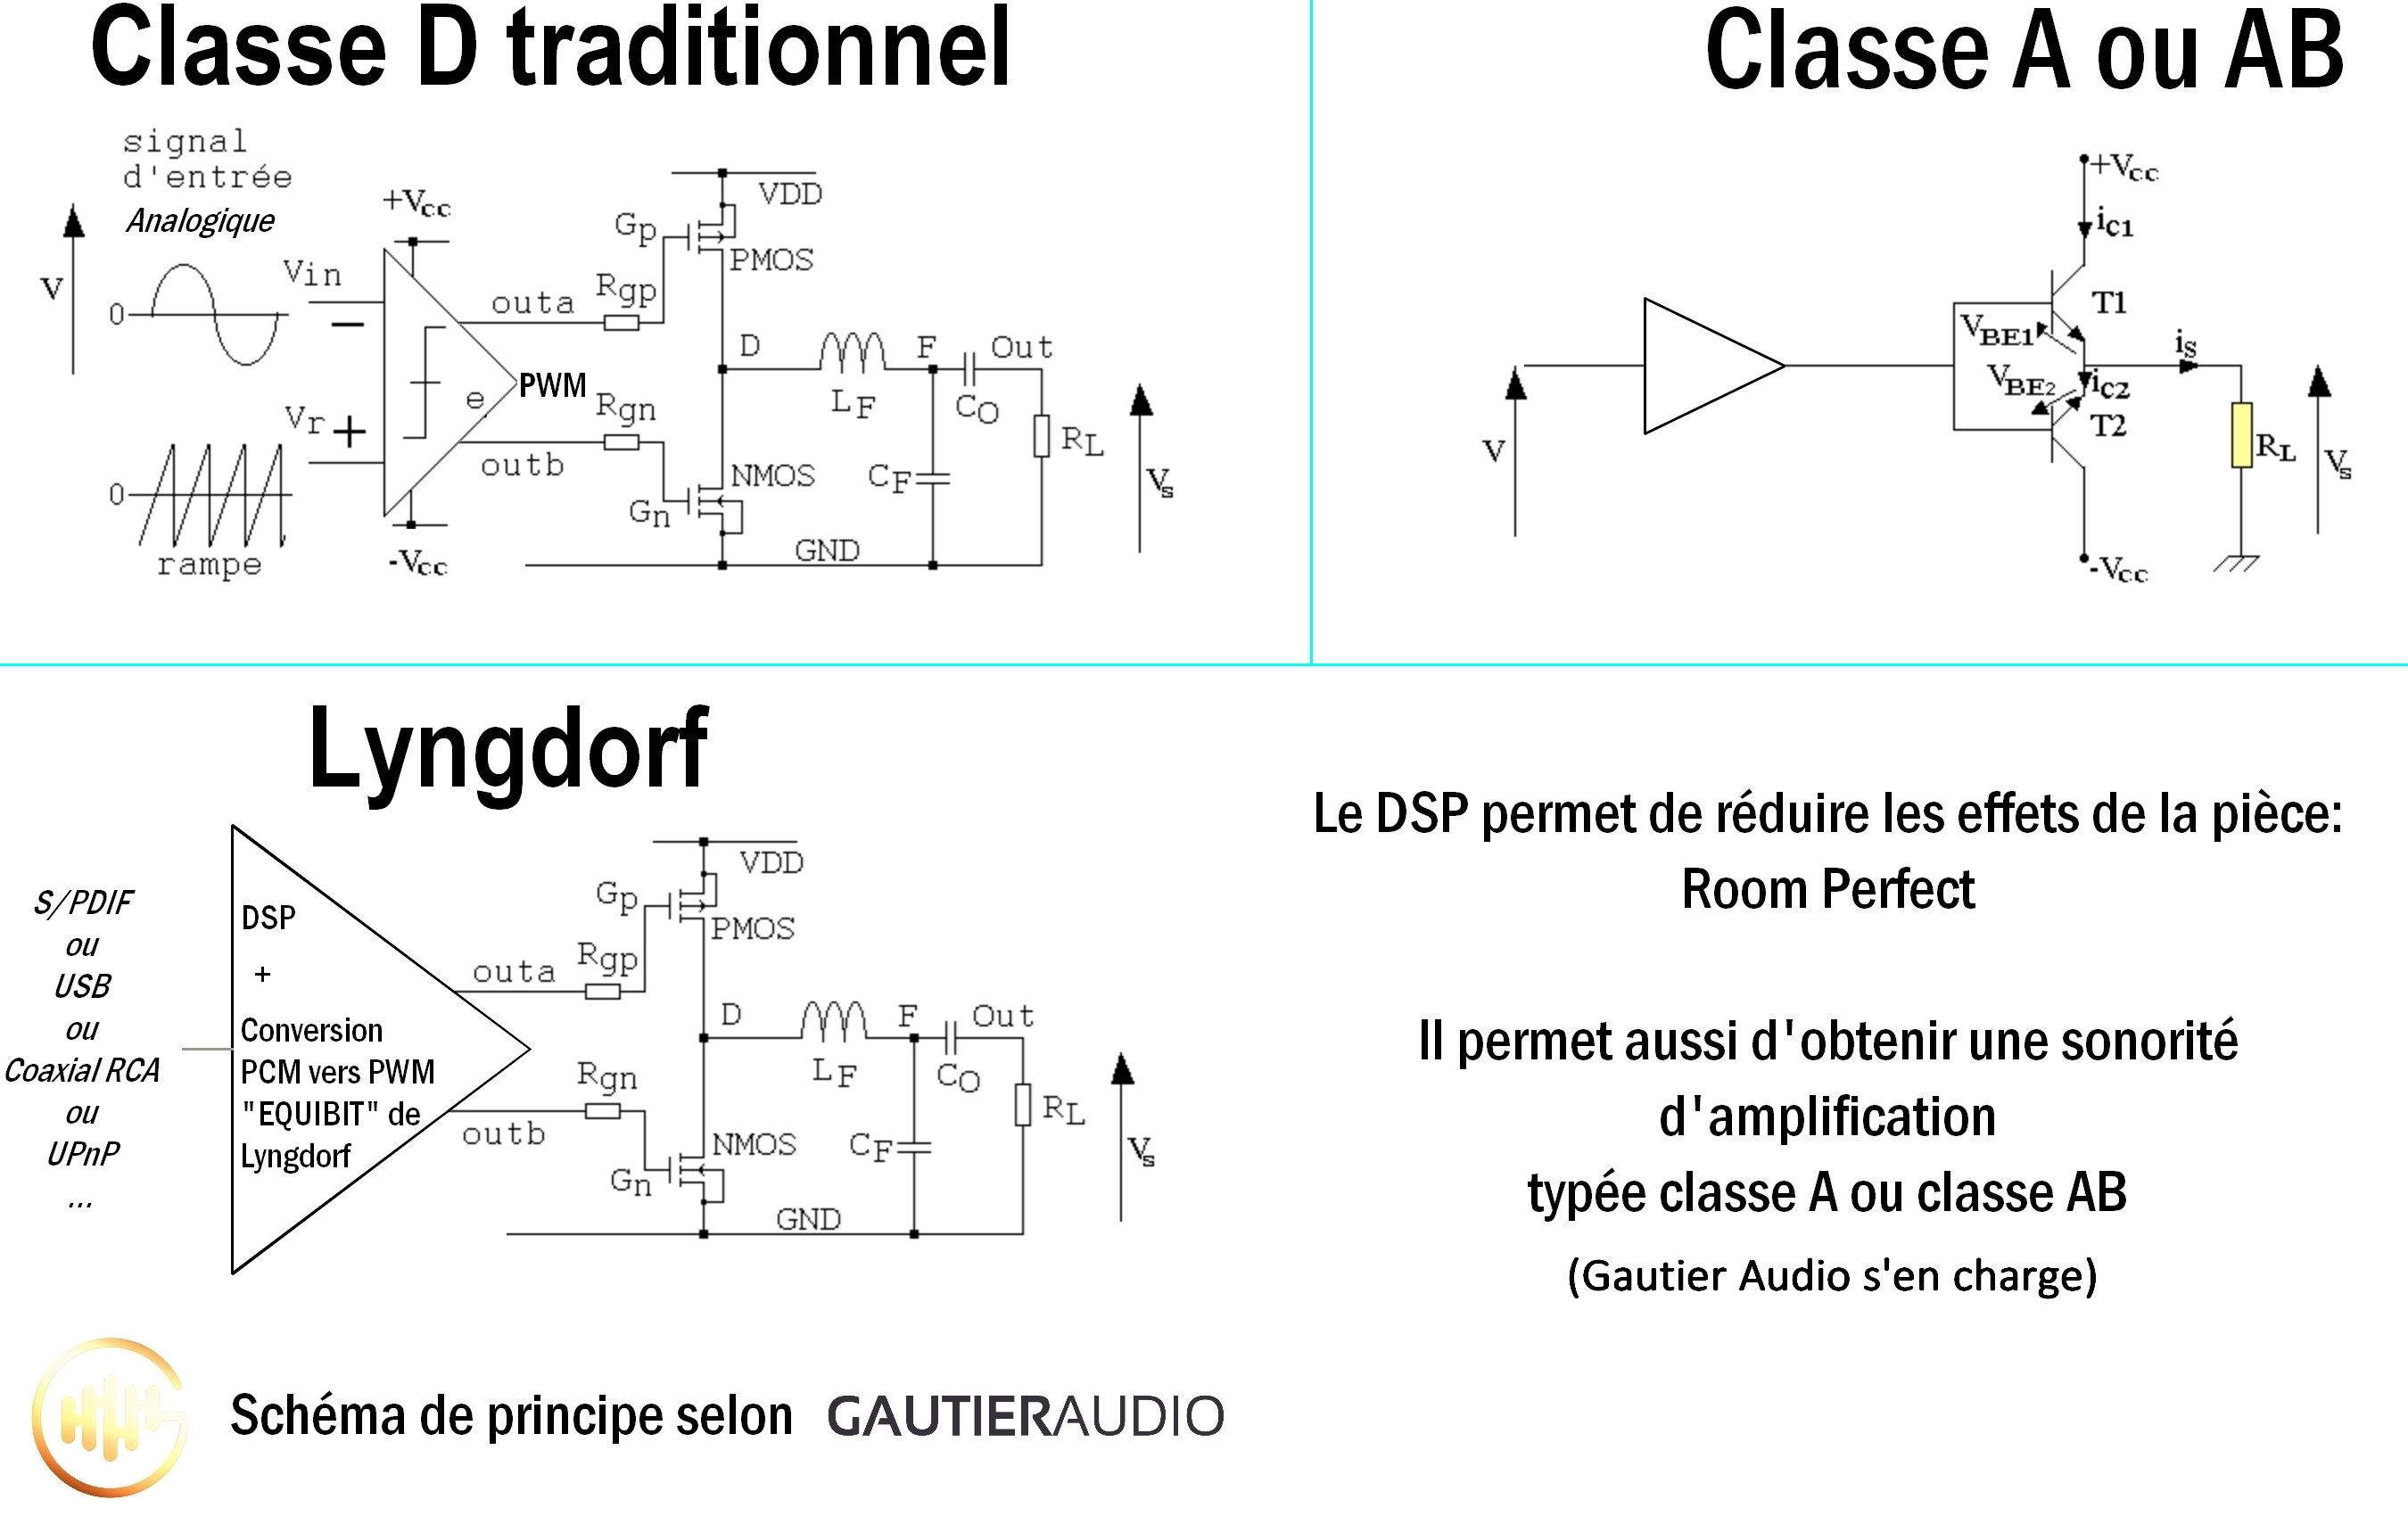 Pourquoi l'amplificateur Lyngdorf permet de reproduire une sonorité d'amplificateur class A ou classe AB haut de gamme, explications en image. Aucune perte de signal. Le traitement numérique est conservé jusqu'à ce filtre passe-bas.Le DSP permet de réduire les effets de réverbération de la pièce grâce au 